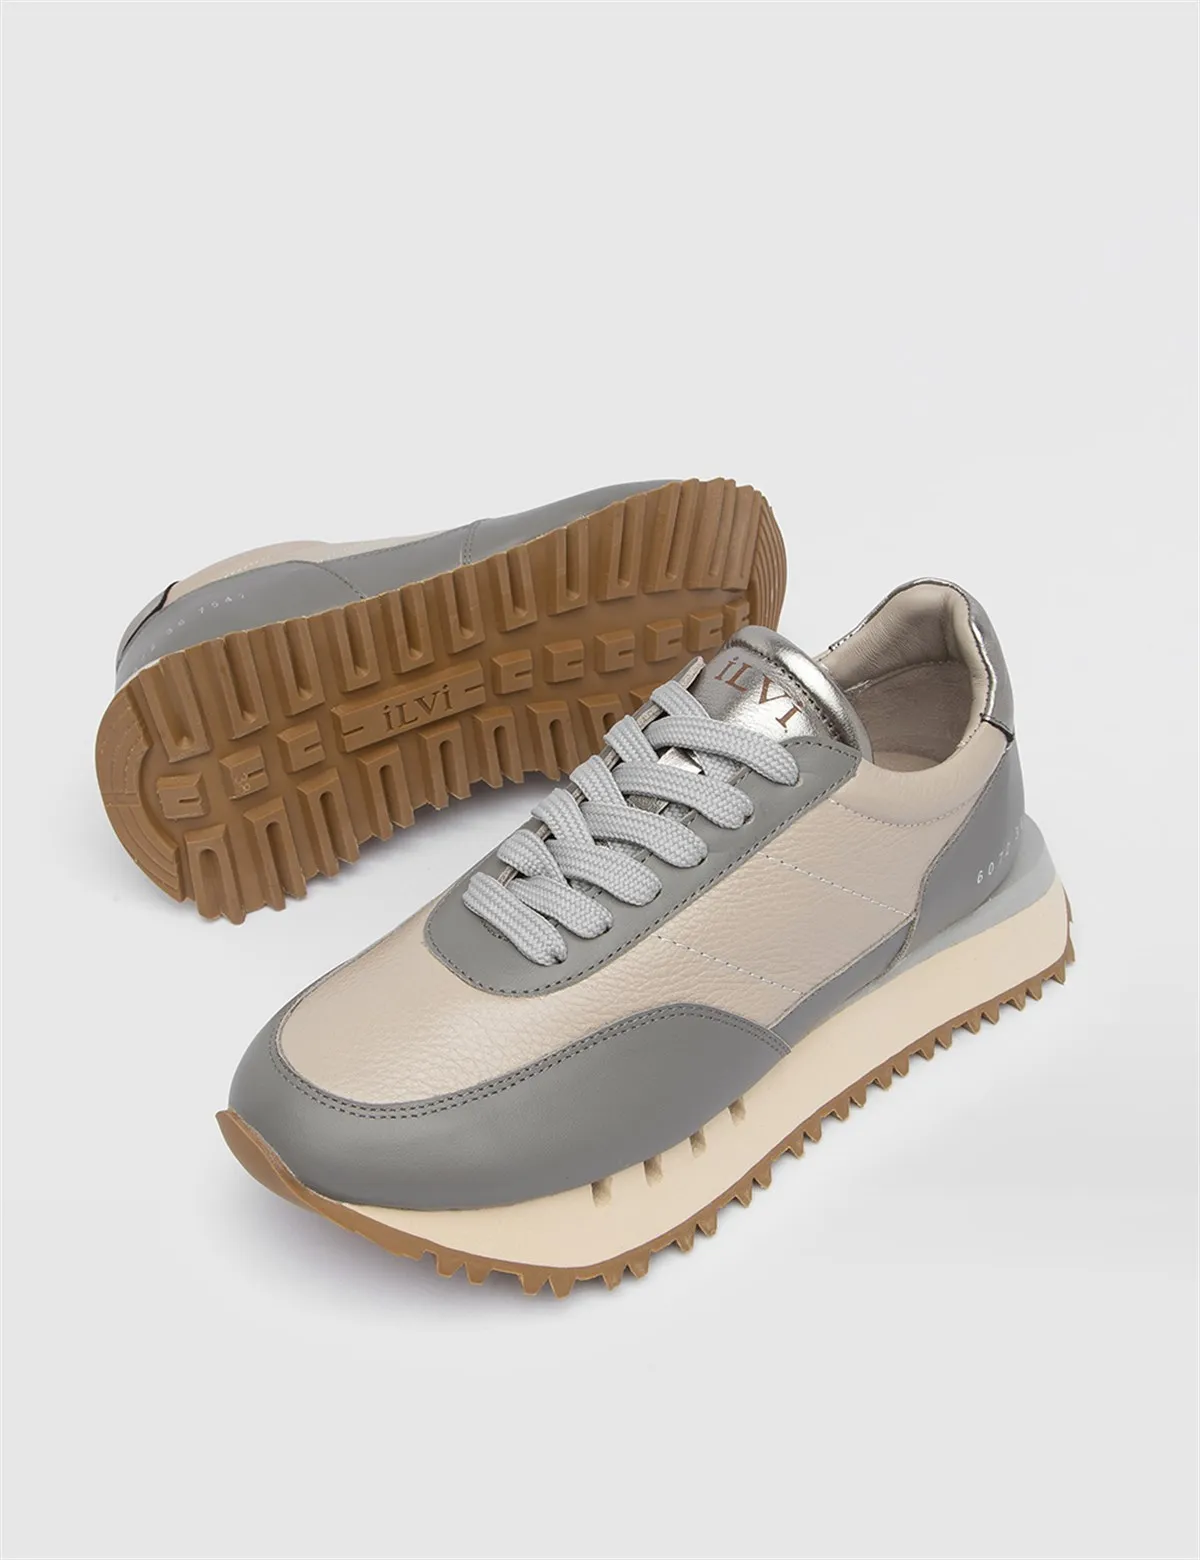 

ILVi-Genuine Leather Handmade Jeri Grey-Mink Sneaker Women's Shoes 2022 Fall/Winter